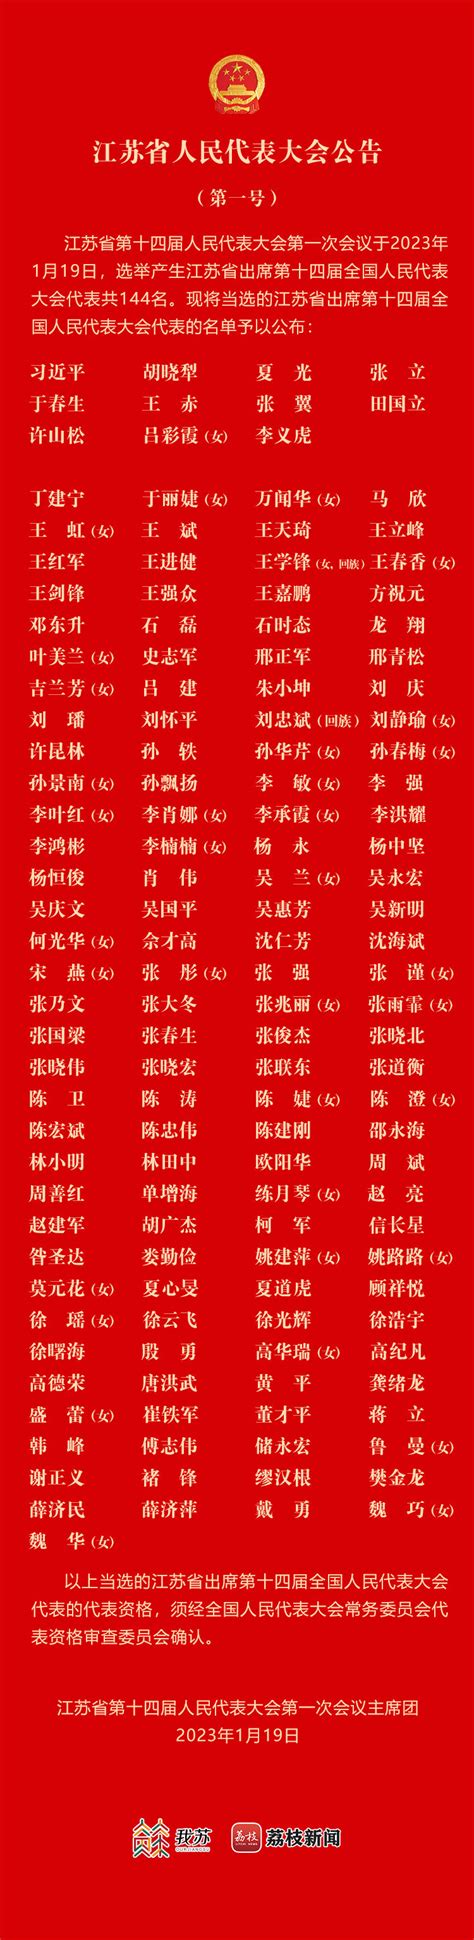 黄石市第十五届人民代表大会第一次会议开幕_长江云 - 湖北网络广播电视台官方网站